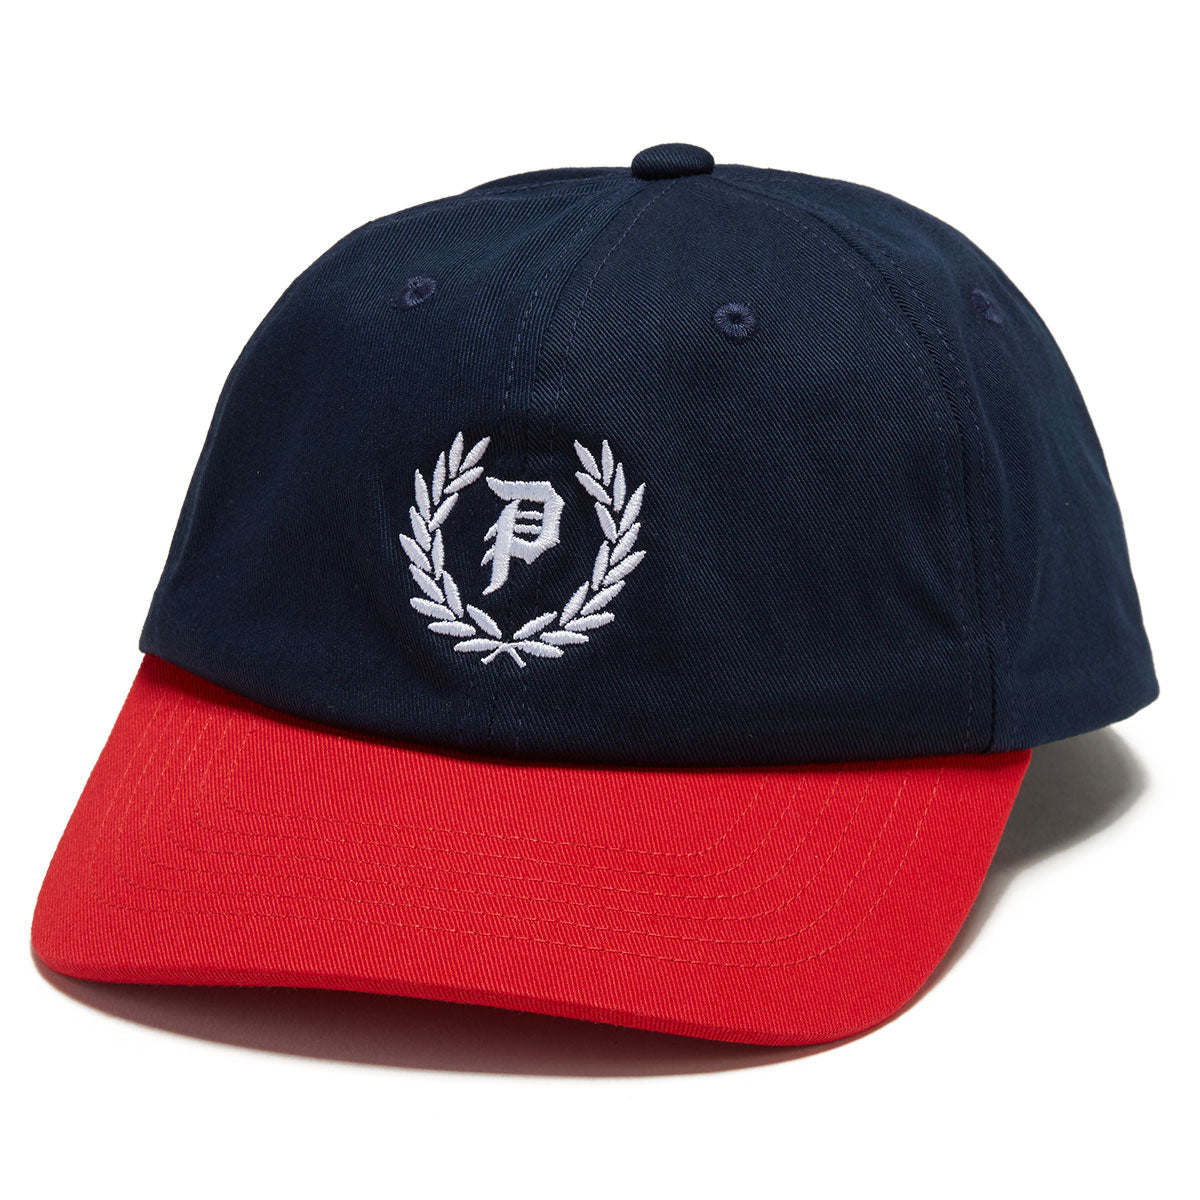 Primitive Crest Strapback Hat - Navy image 1